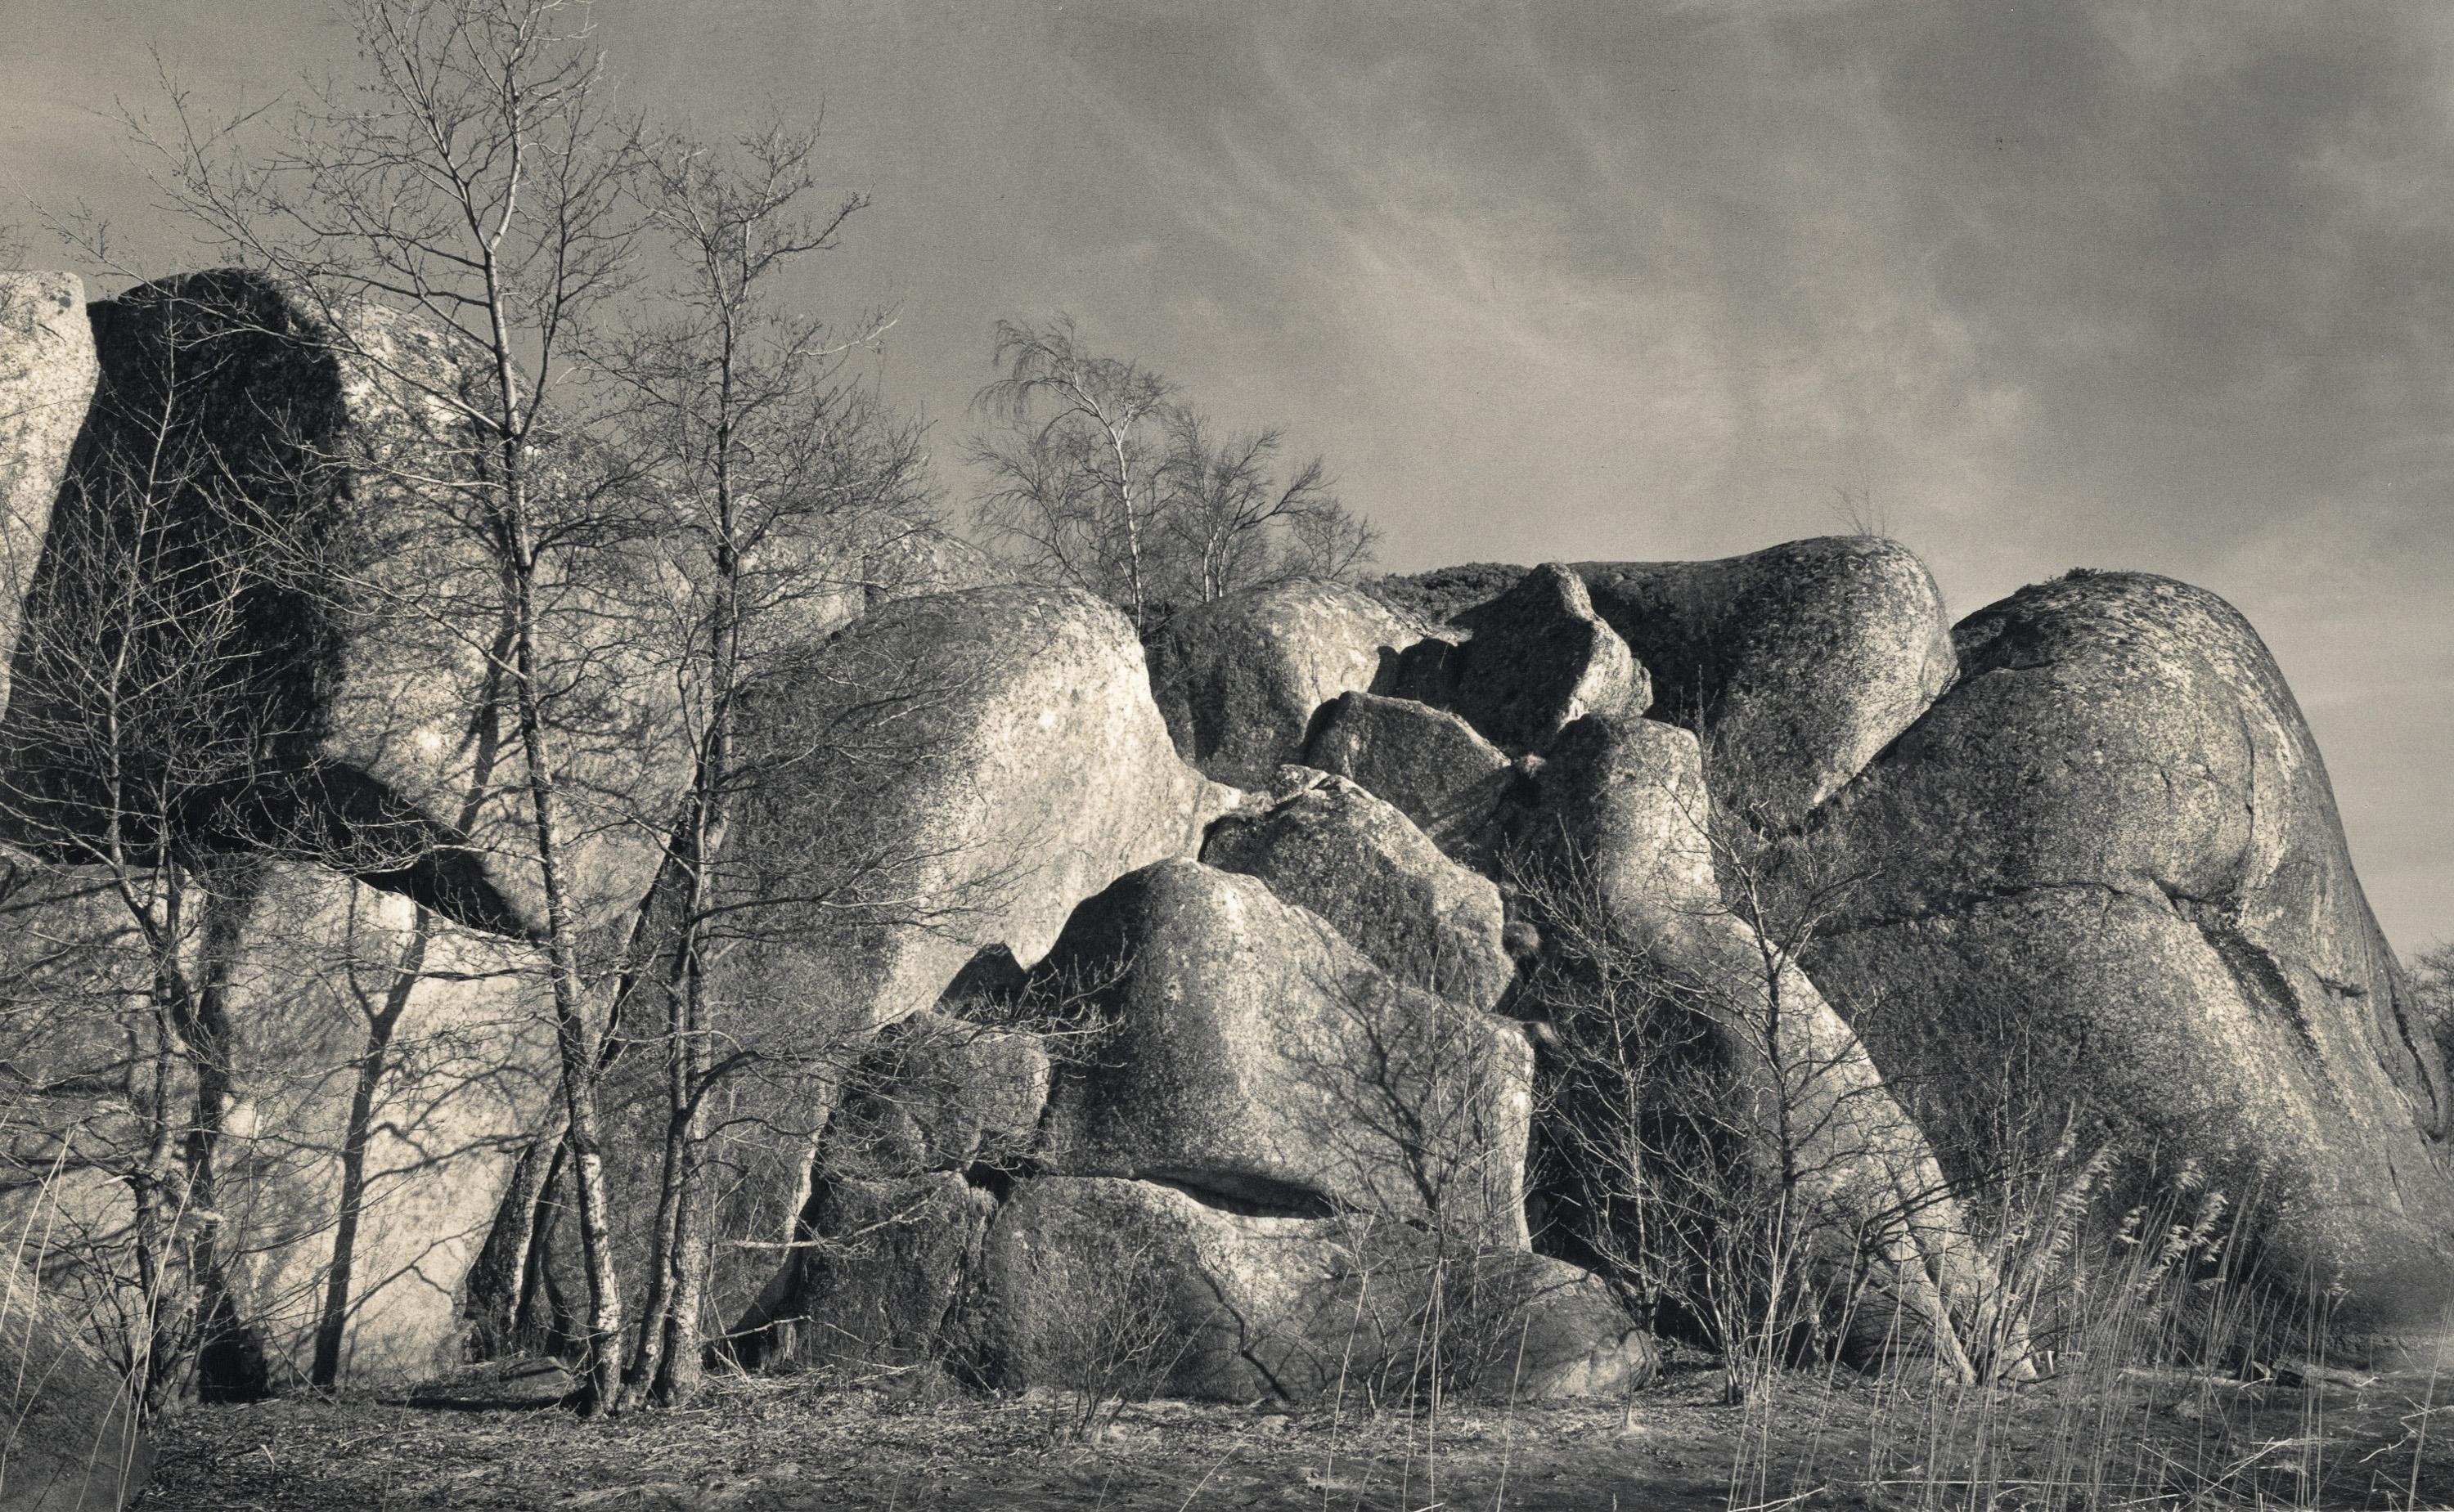 Abstract Photograph Pentti Sammallahti - Kokar, Finlande (Formation rocheuse)